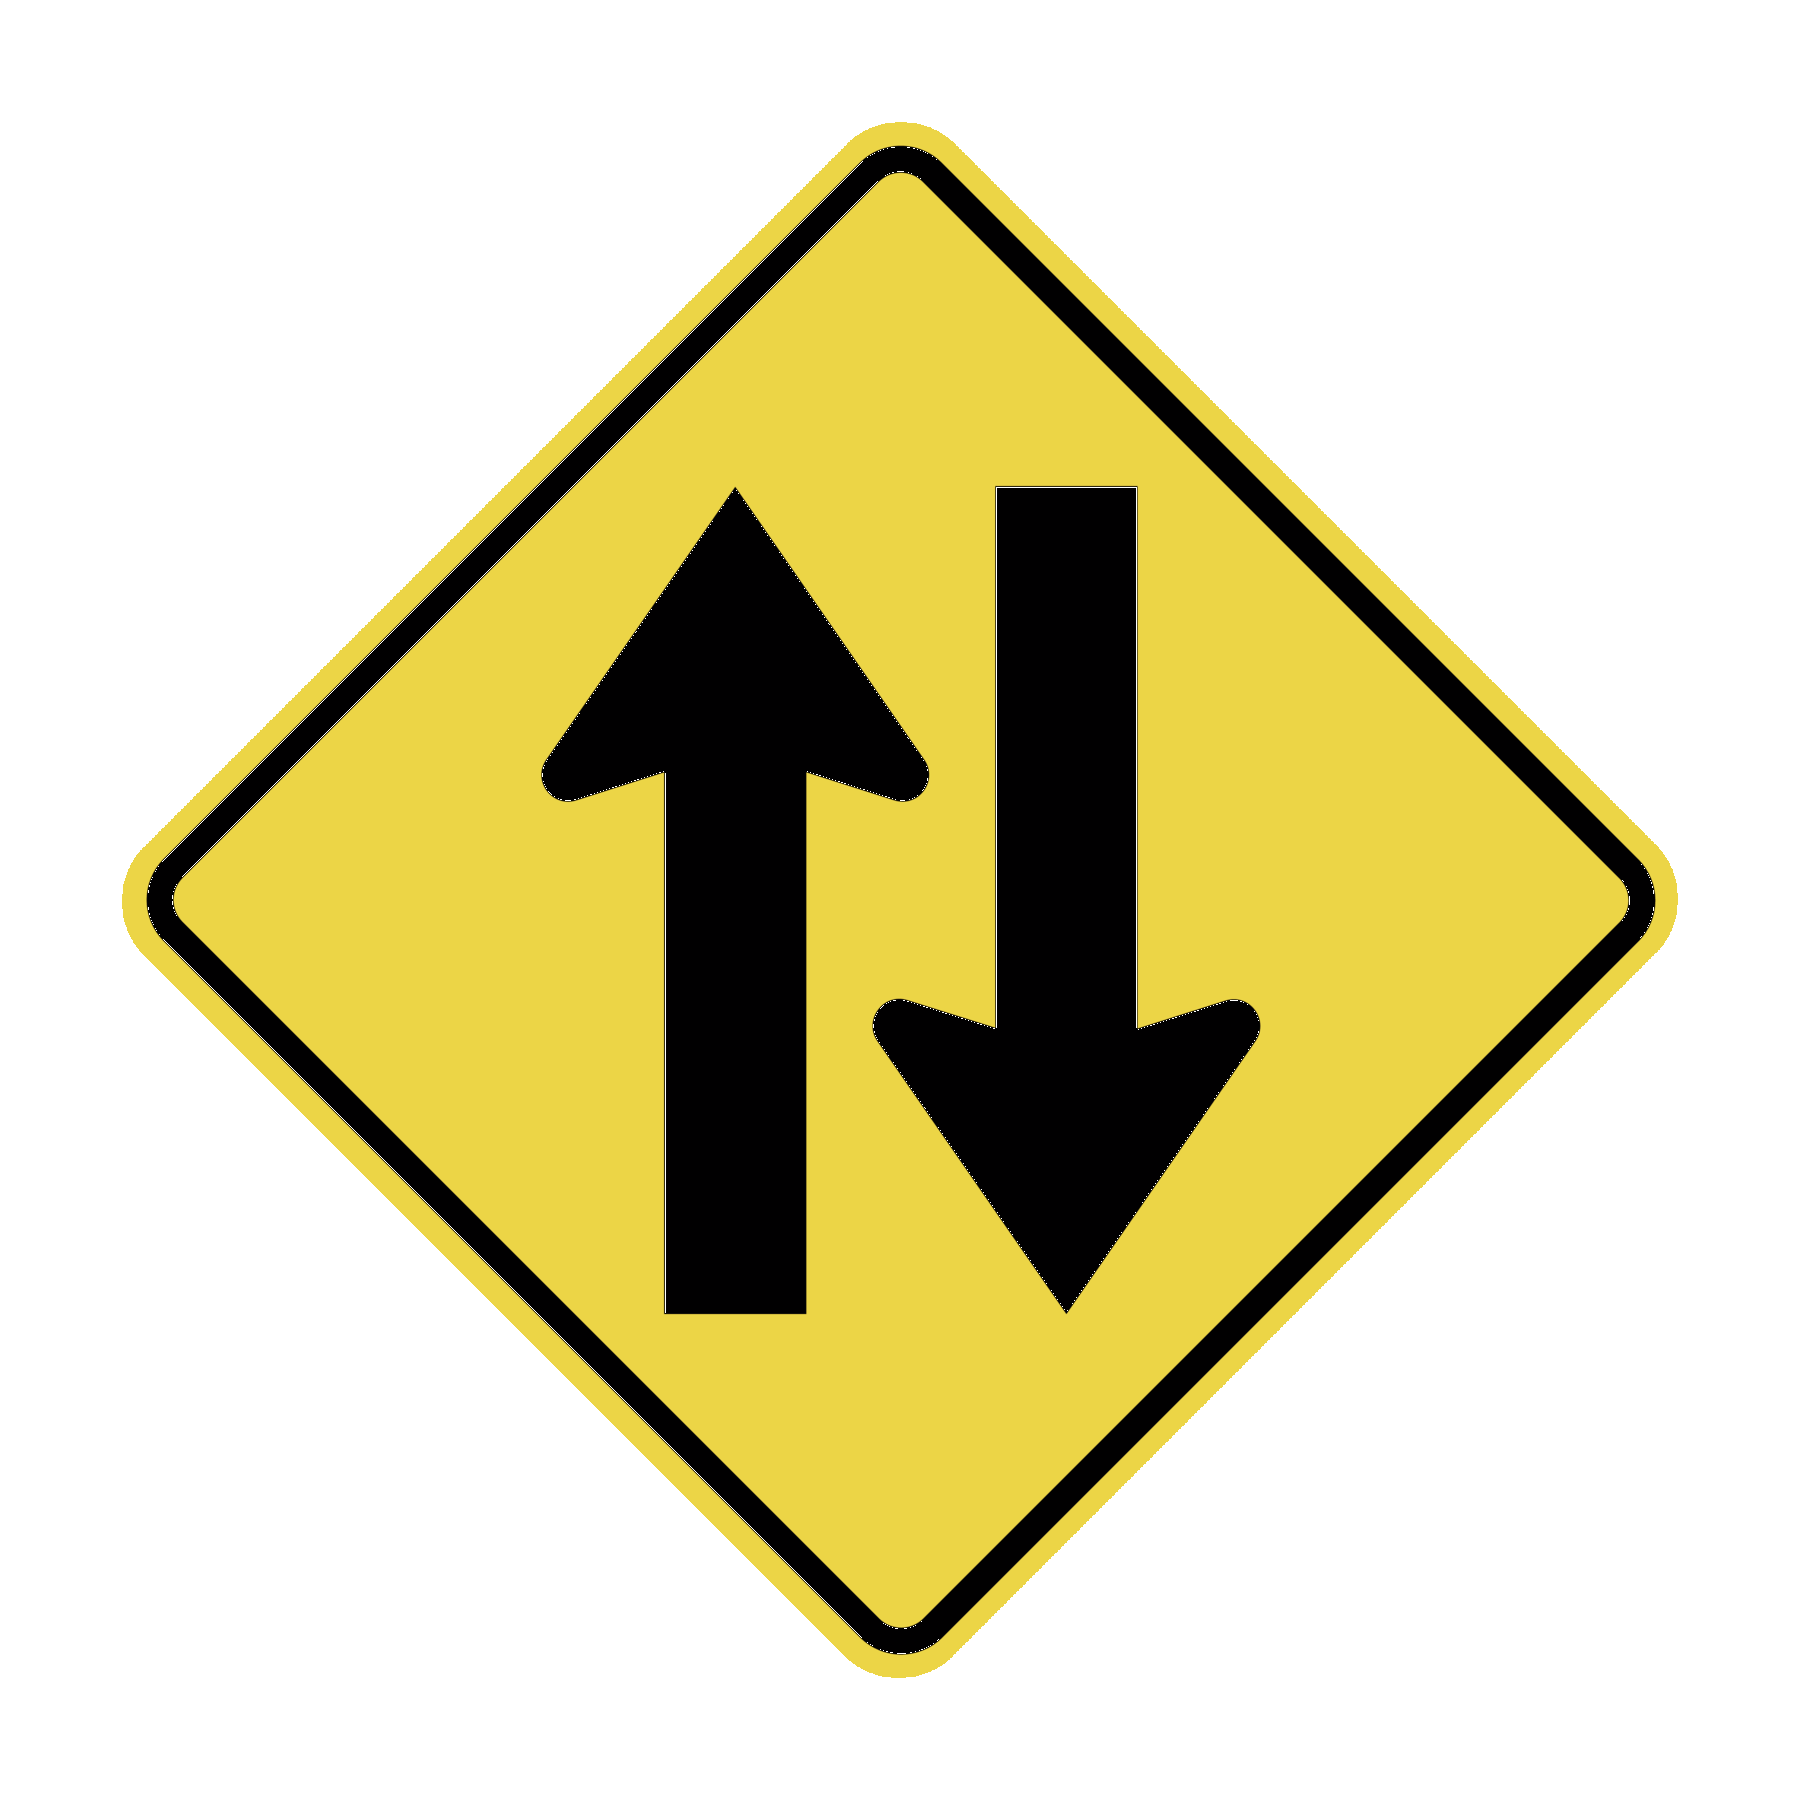 Ilustração. Reprodução de uma placa de trânsito em forma de losango equilátero de fundo amarelo contornado de preto com duas setas espessas pretas dispostas lado a lado, uma para cima e outra para baixo.